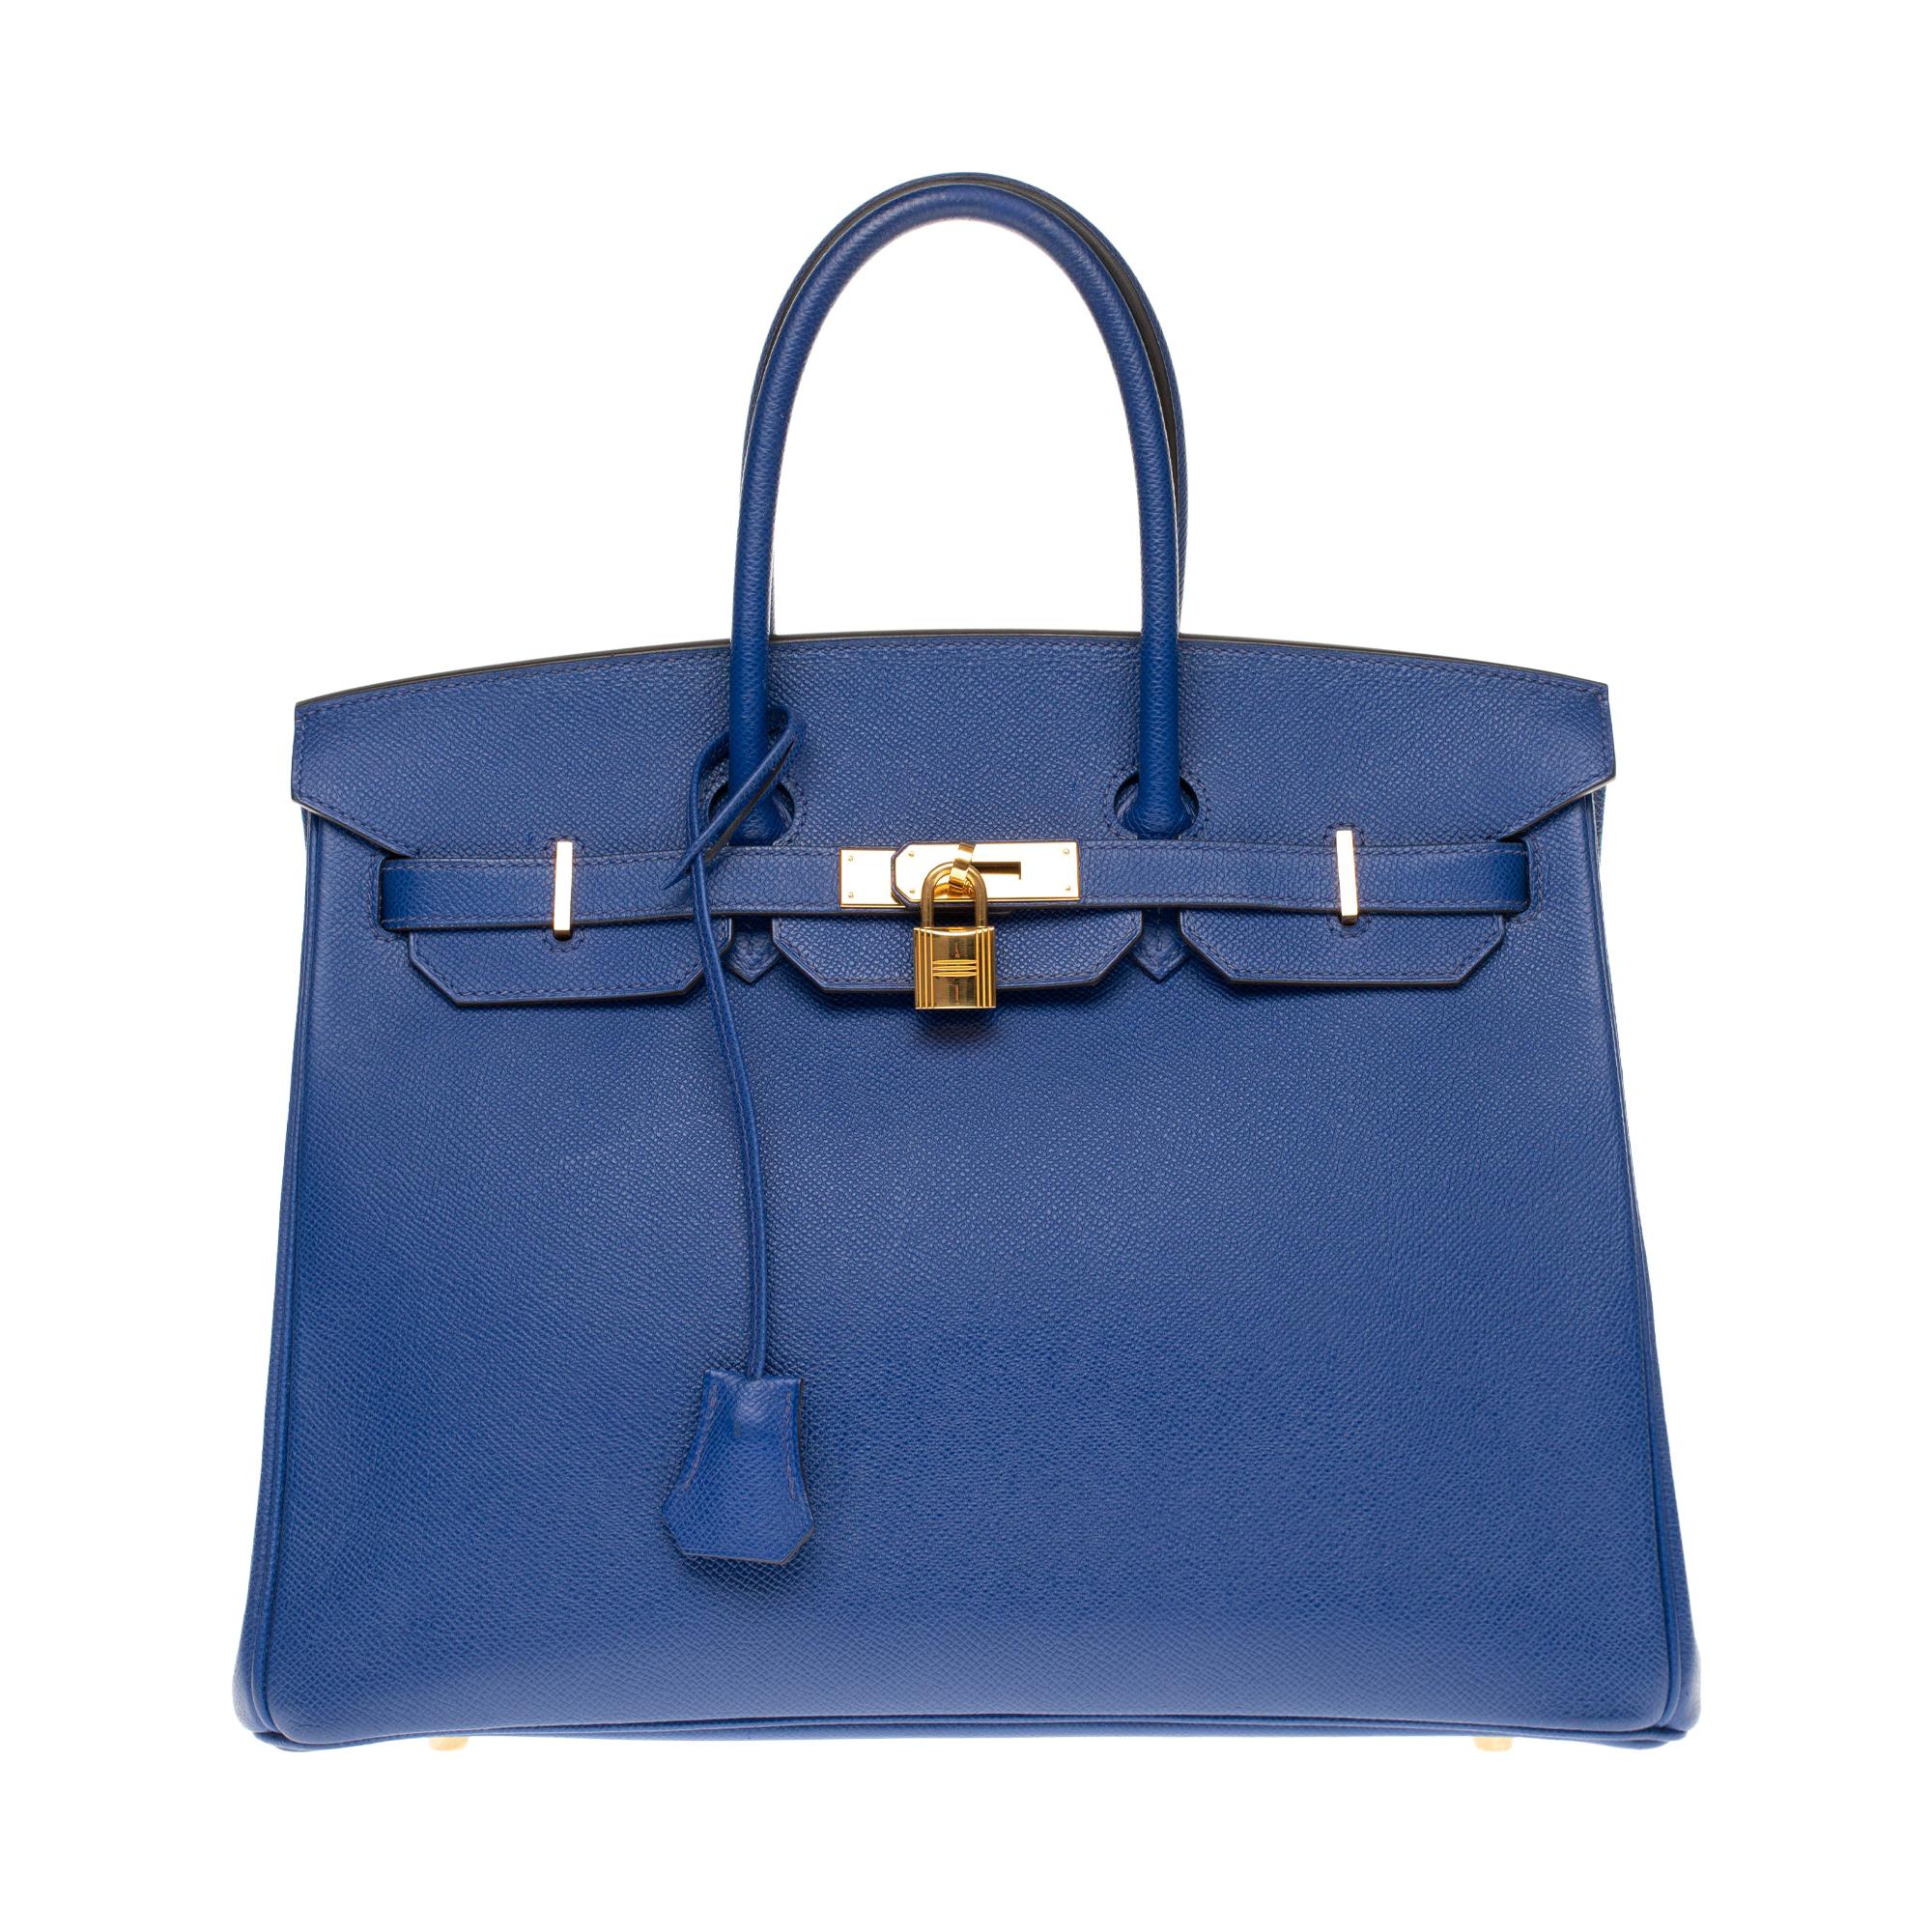 Hermès Birkin 35 handbag in bleu électrique epsom leather, GHW